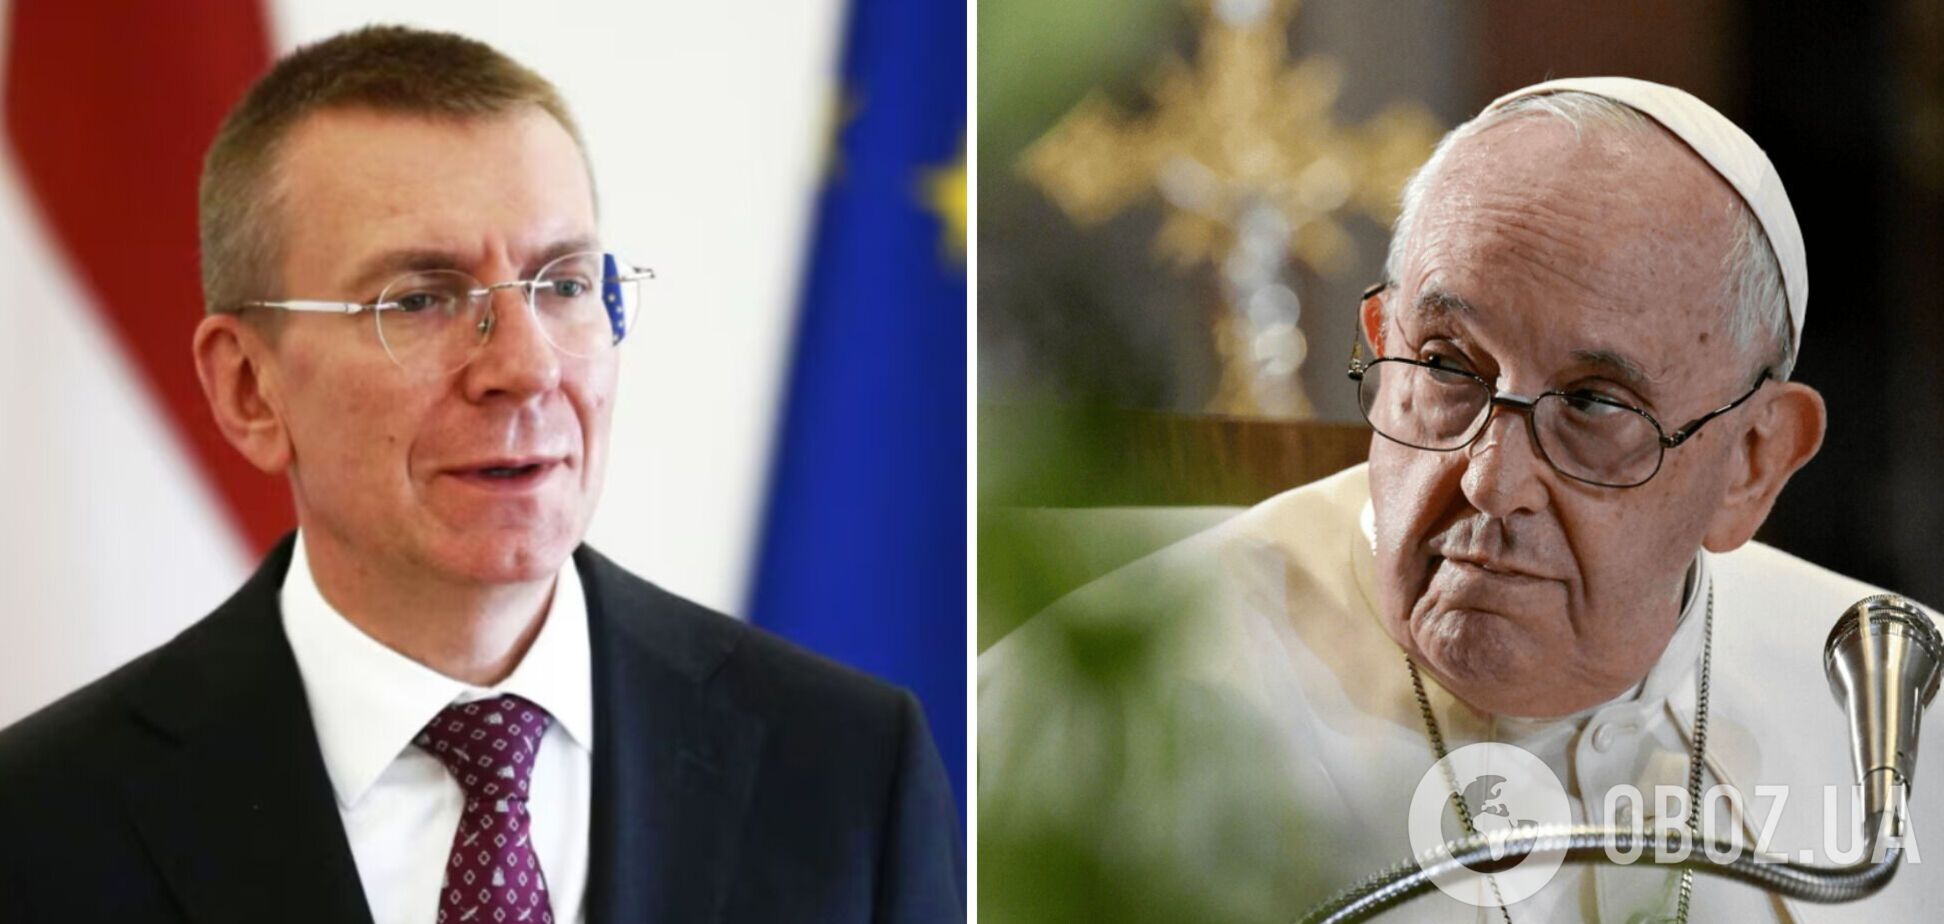 'Нельзя капитулировать перед злом': президент Латвии отреагировал на заявление Папы Римского о 'белом флаге'